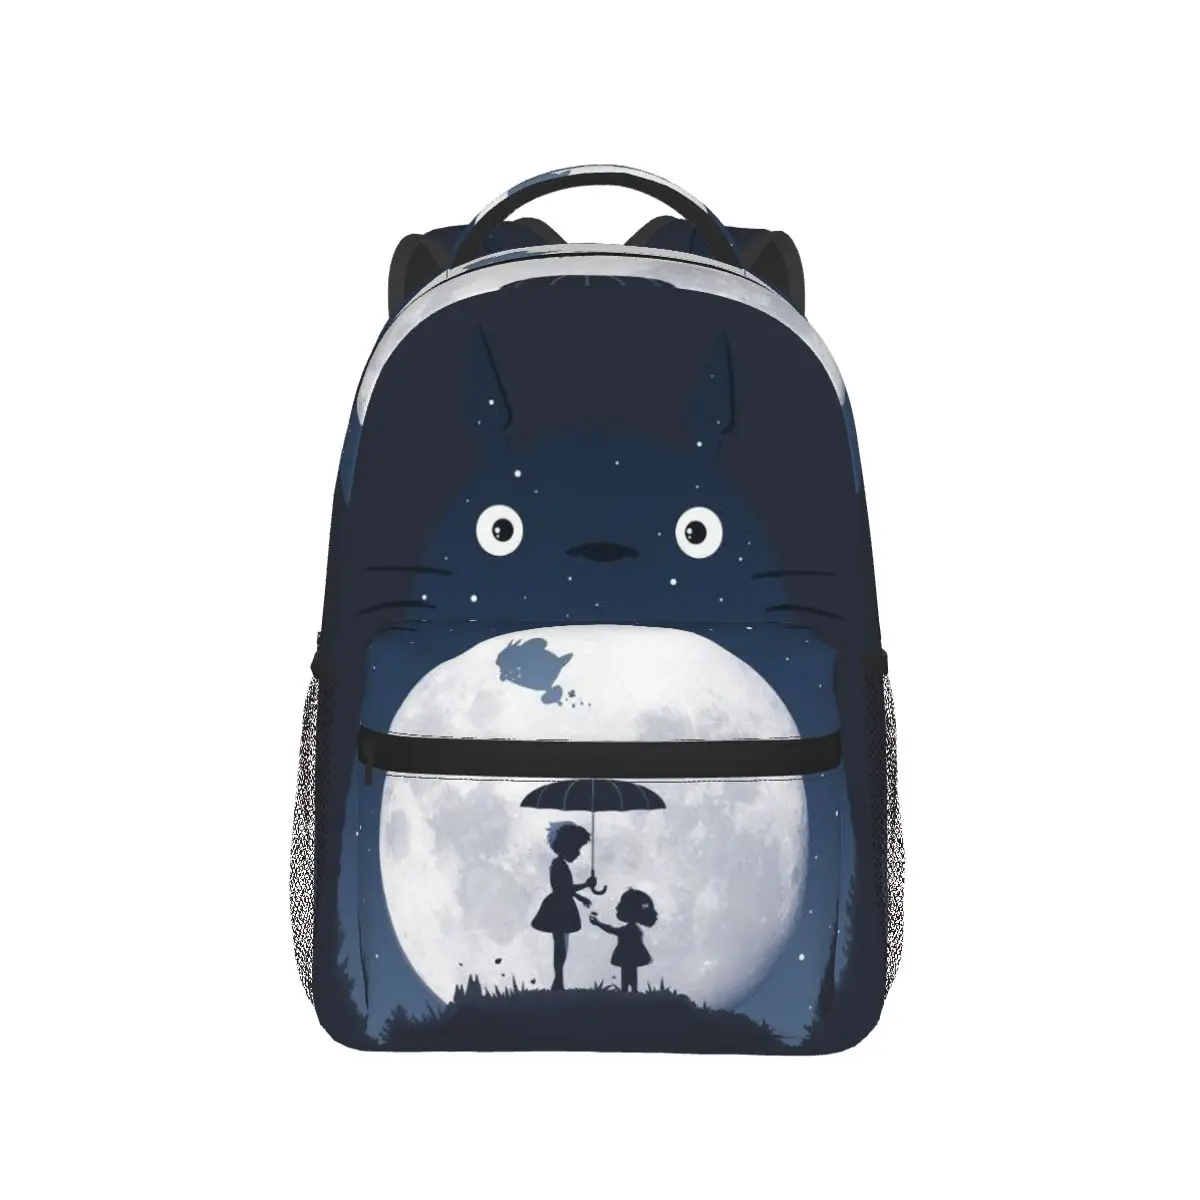 

MOONLIGHT Backpack for Girls Boys Travel Rucksack My Neighbor Totoro Anime Backpacks for Teenage